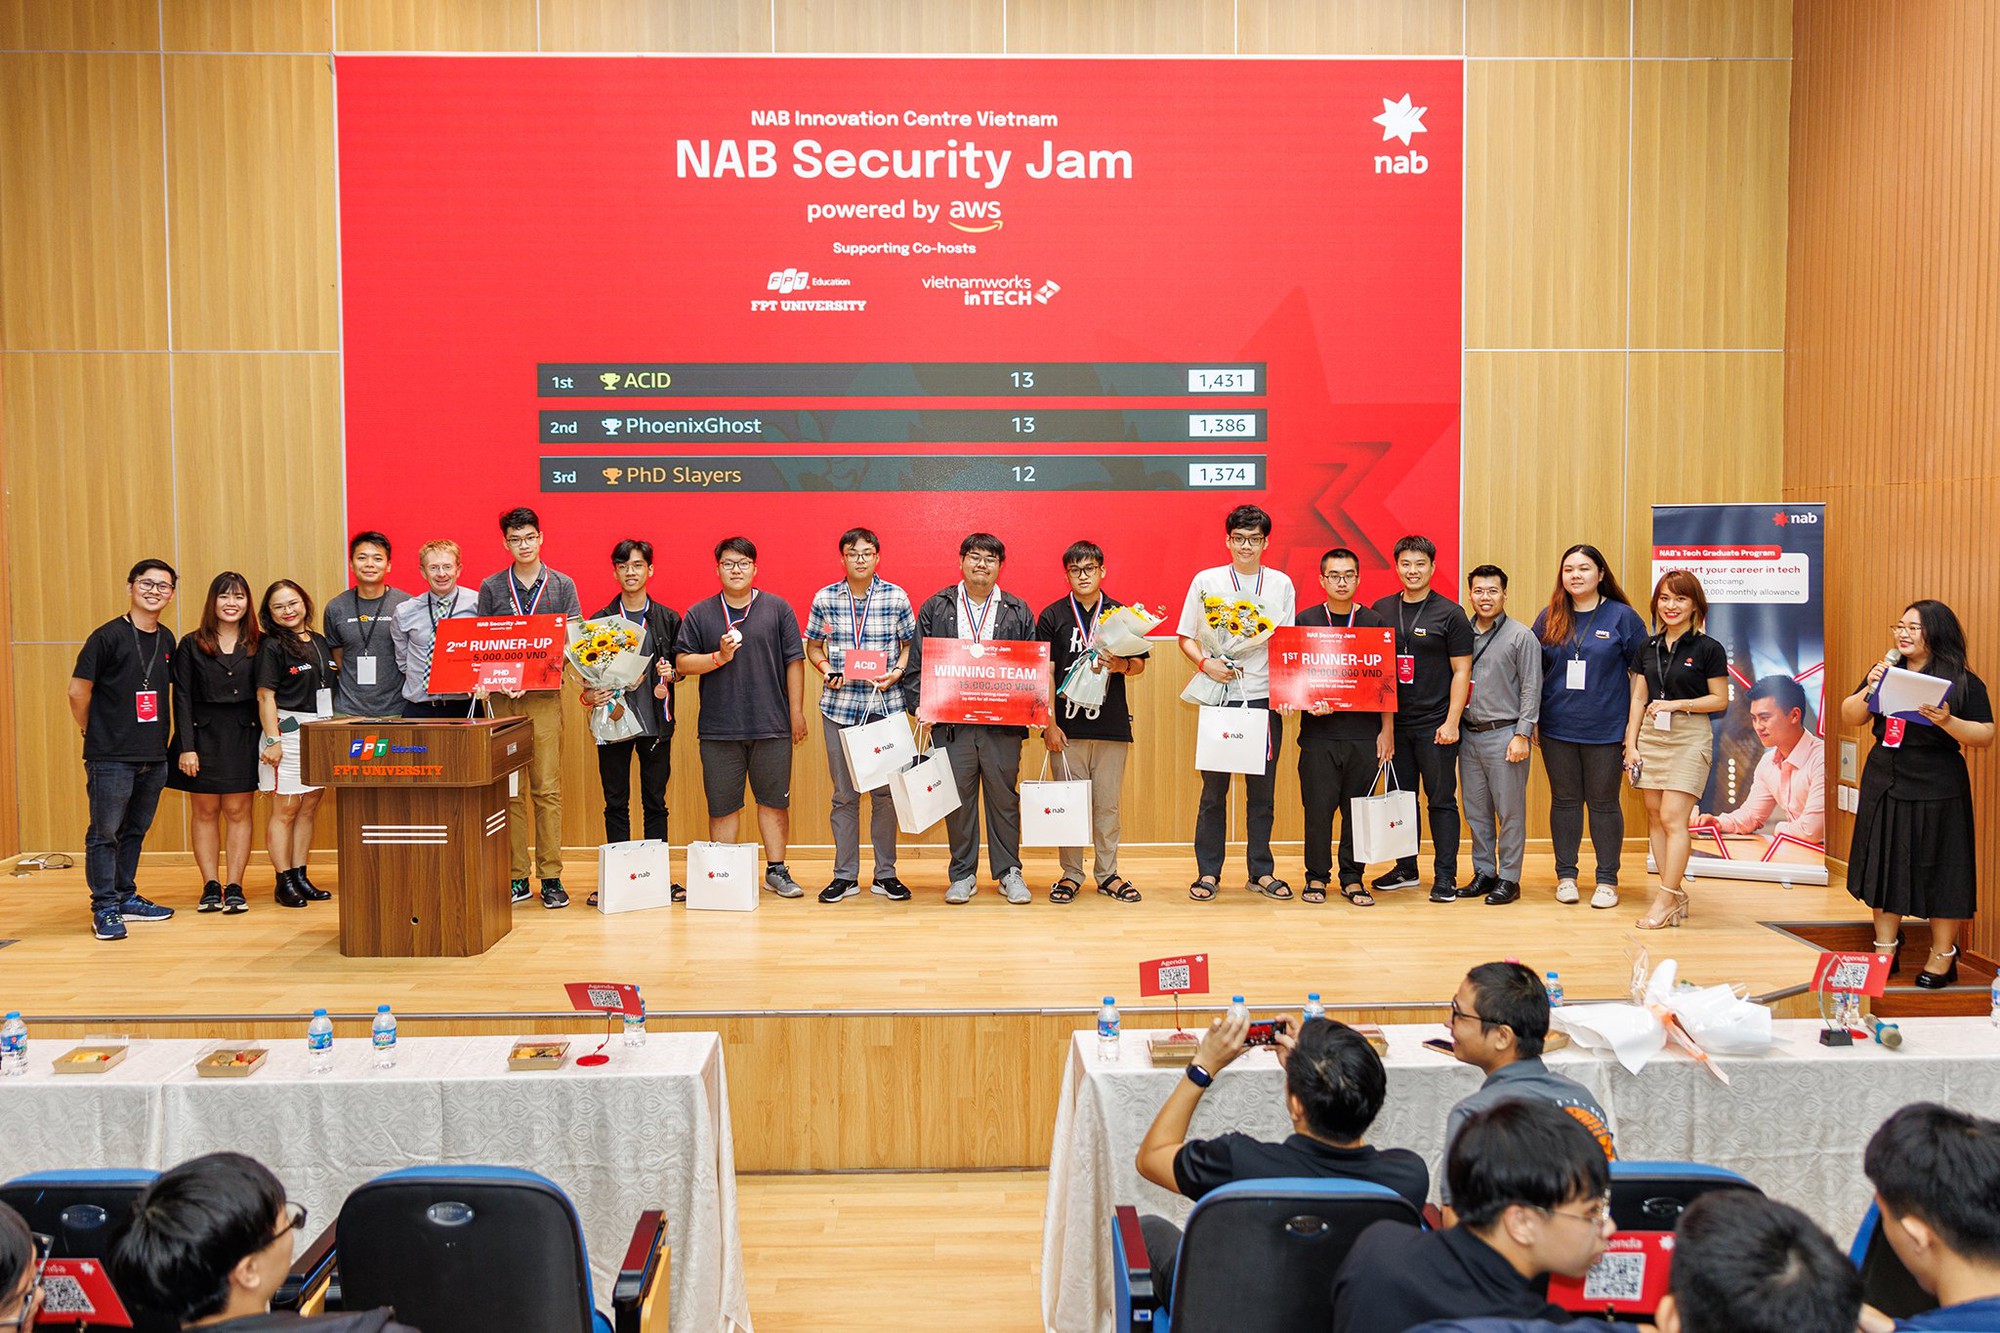 Security Jam: Sân chơi dành cho giới trẻ &quot;yêu công nghệ&quot; được tổ chức bởi NAB Innovation Centre Vietnam trên nền tảng AWS Cloud - Ảnh 4.